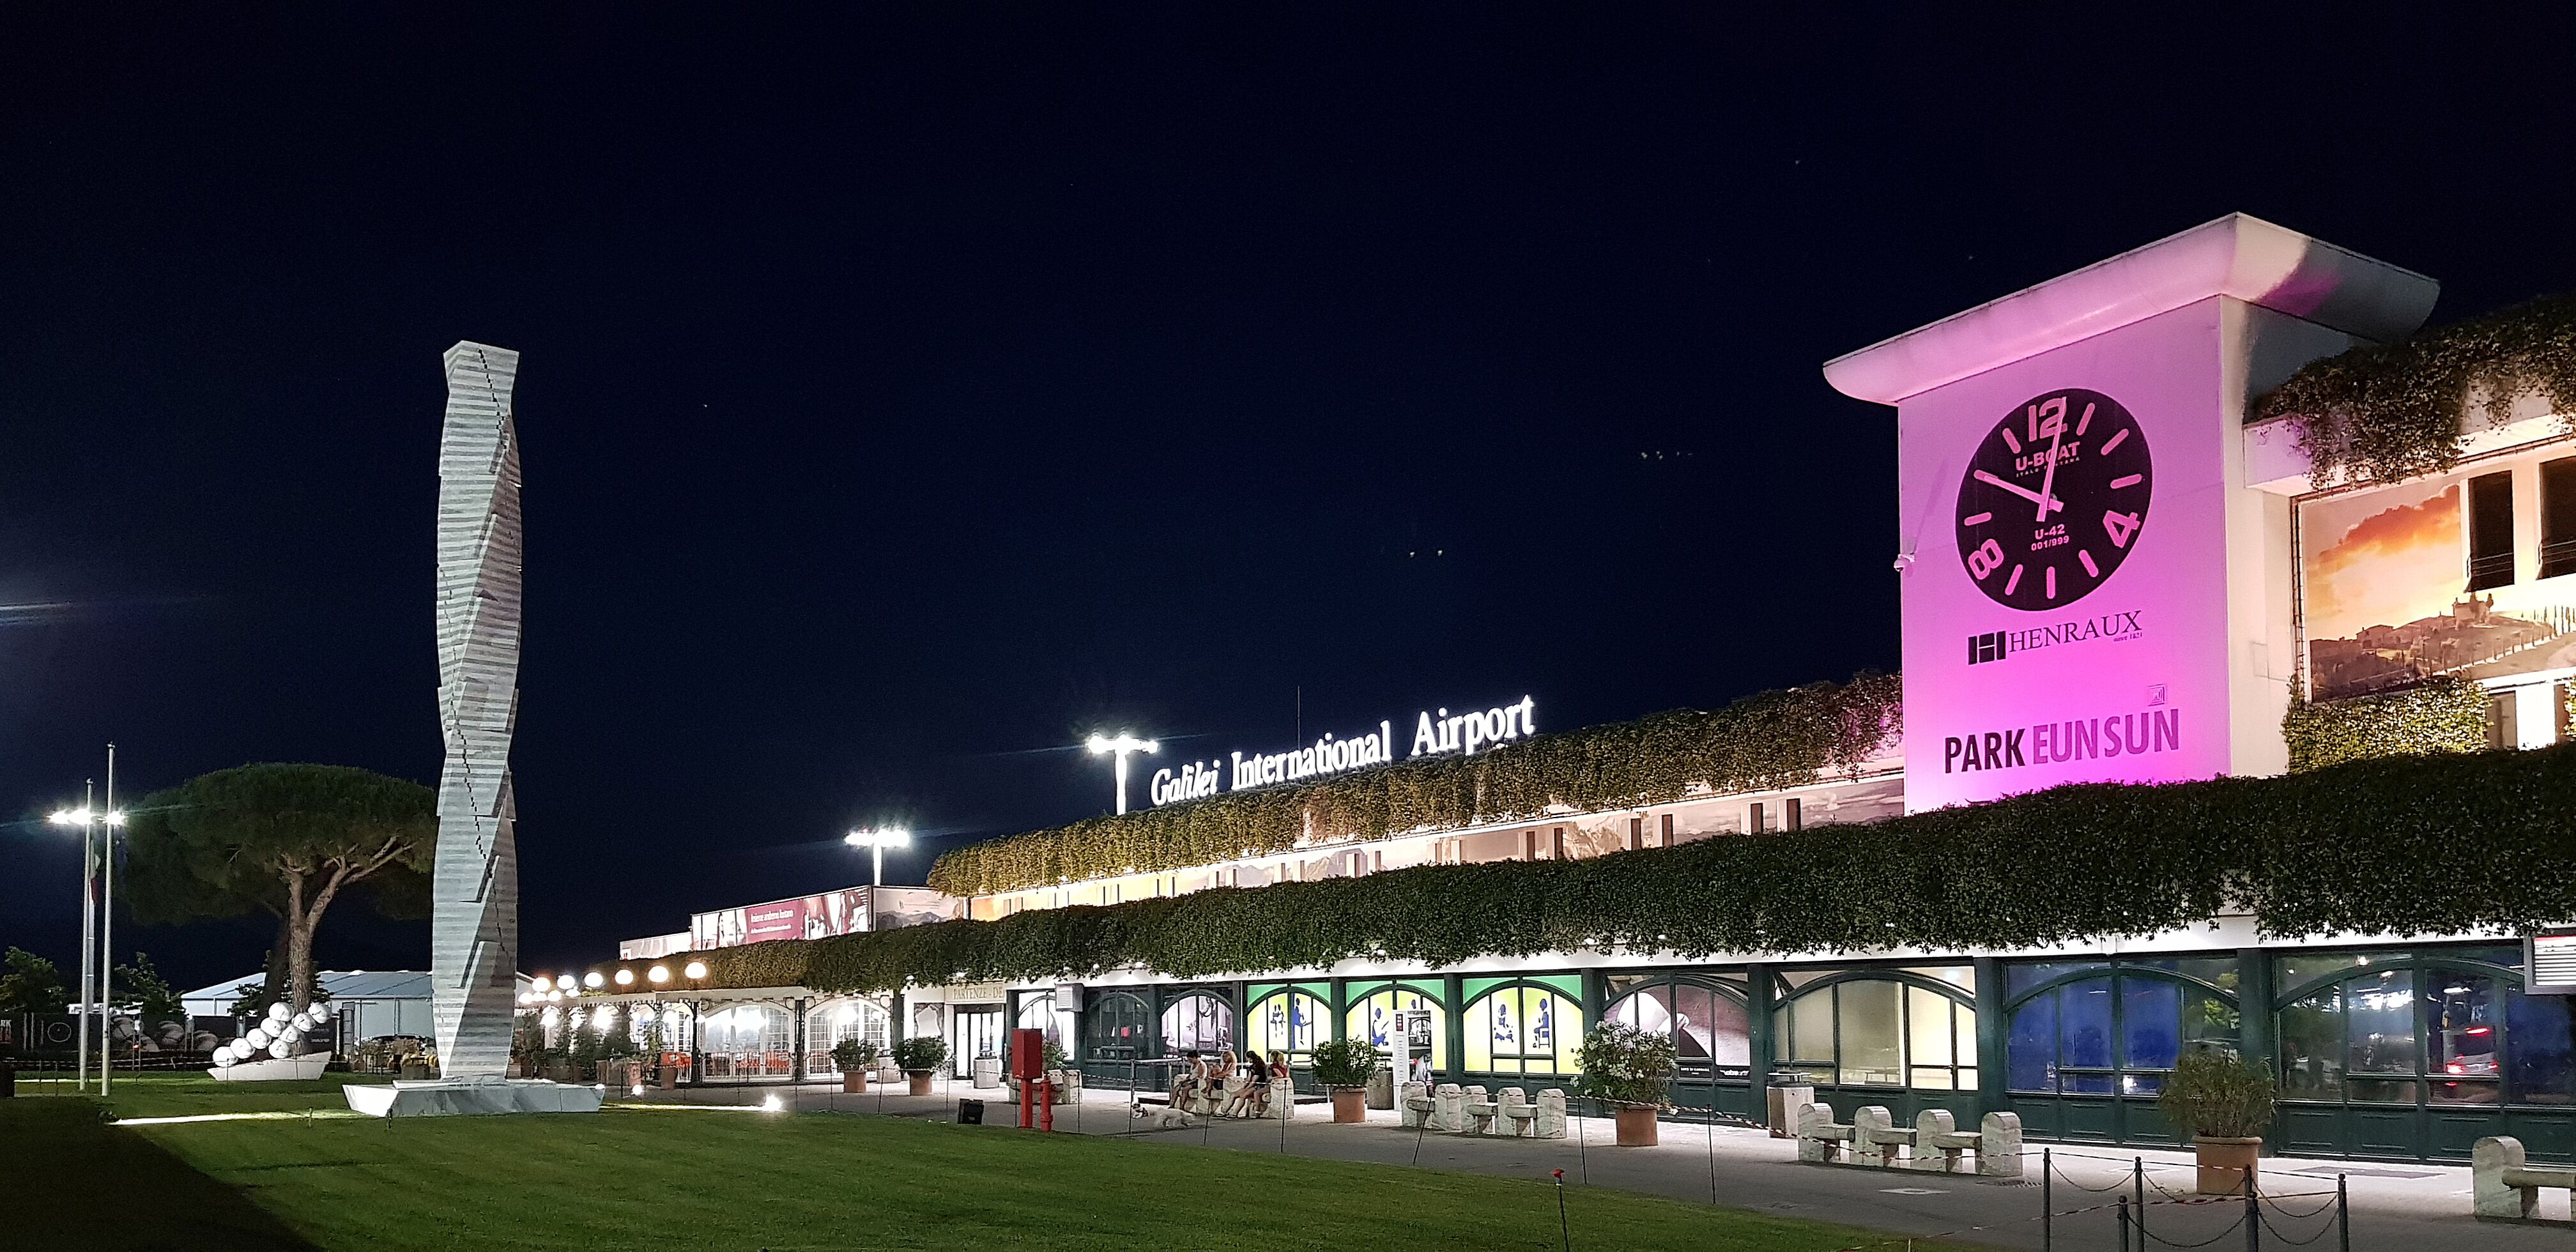 Aeroporti di Pisa e Firenze: la bellezza dell’arte arricchisce le aerostazioni della Toscana